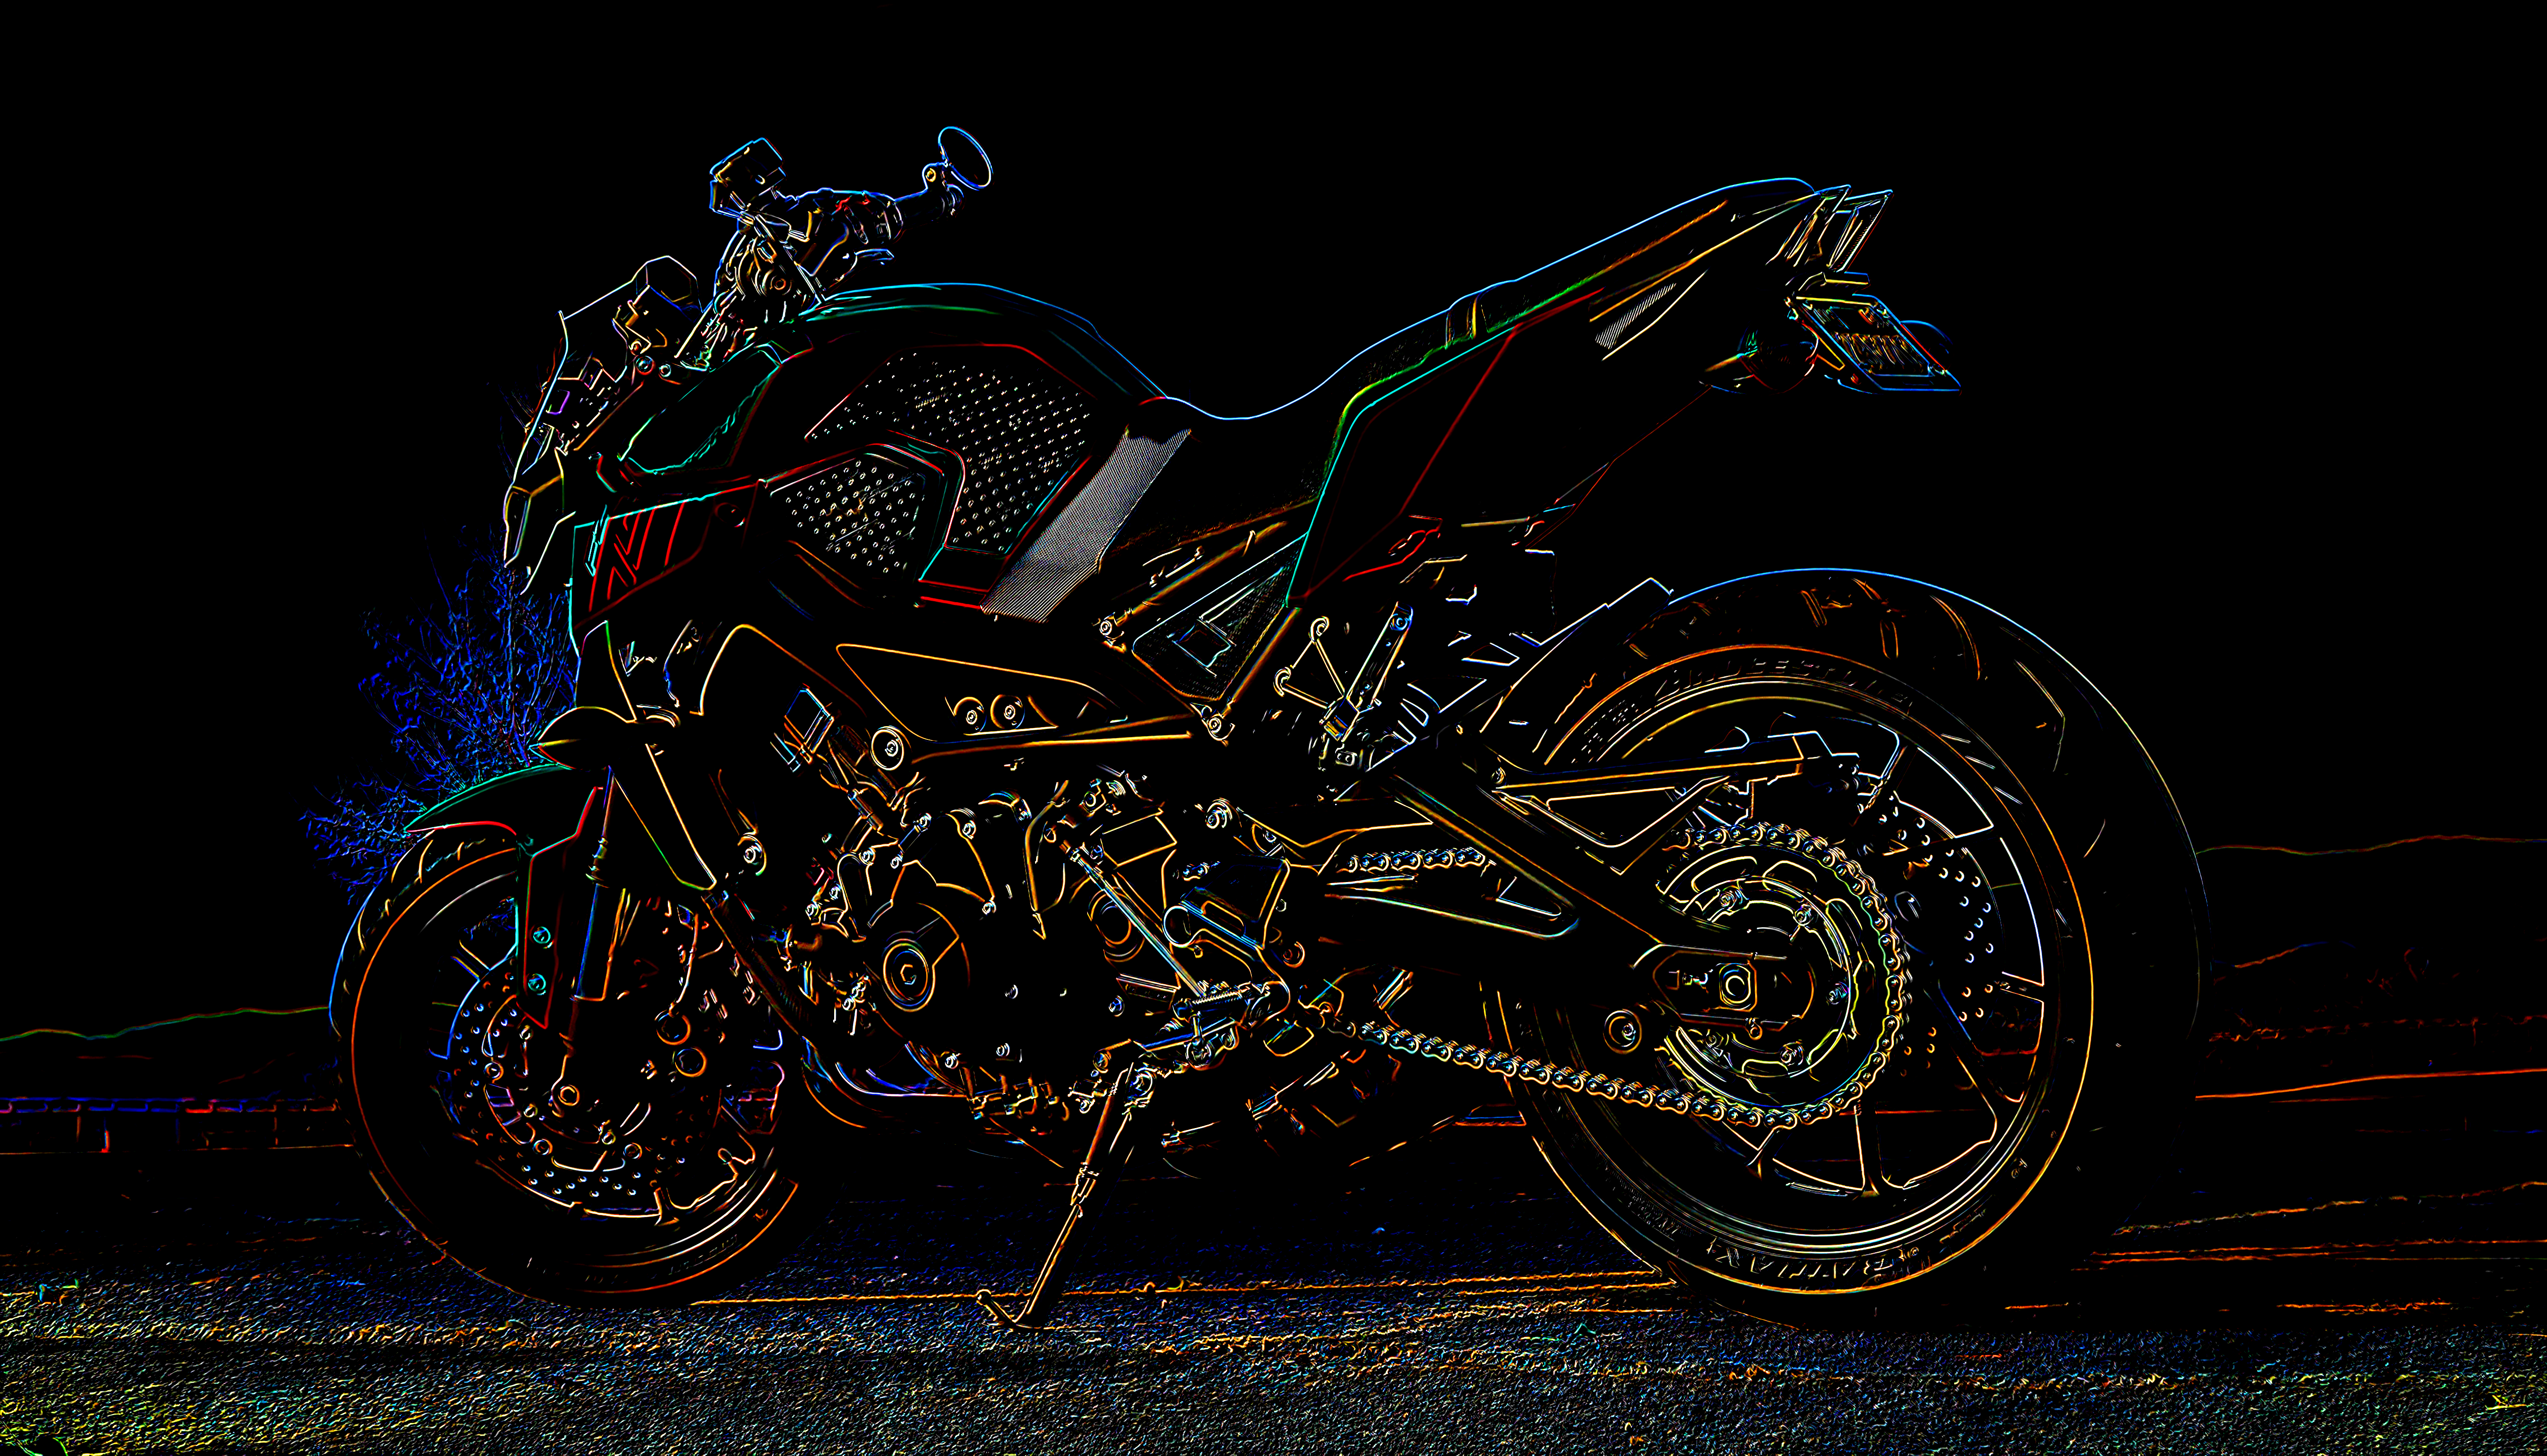 General 5374x3072 vehicle motorcycle digital art photoshopped